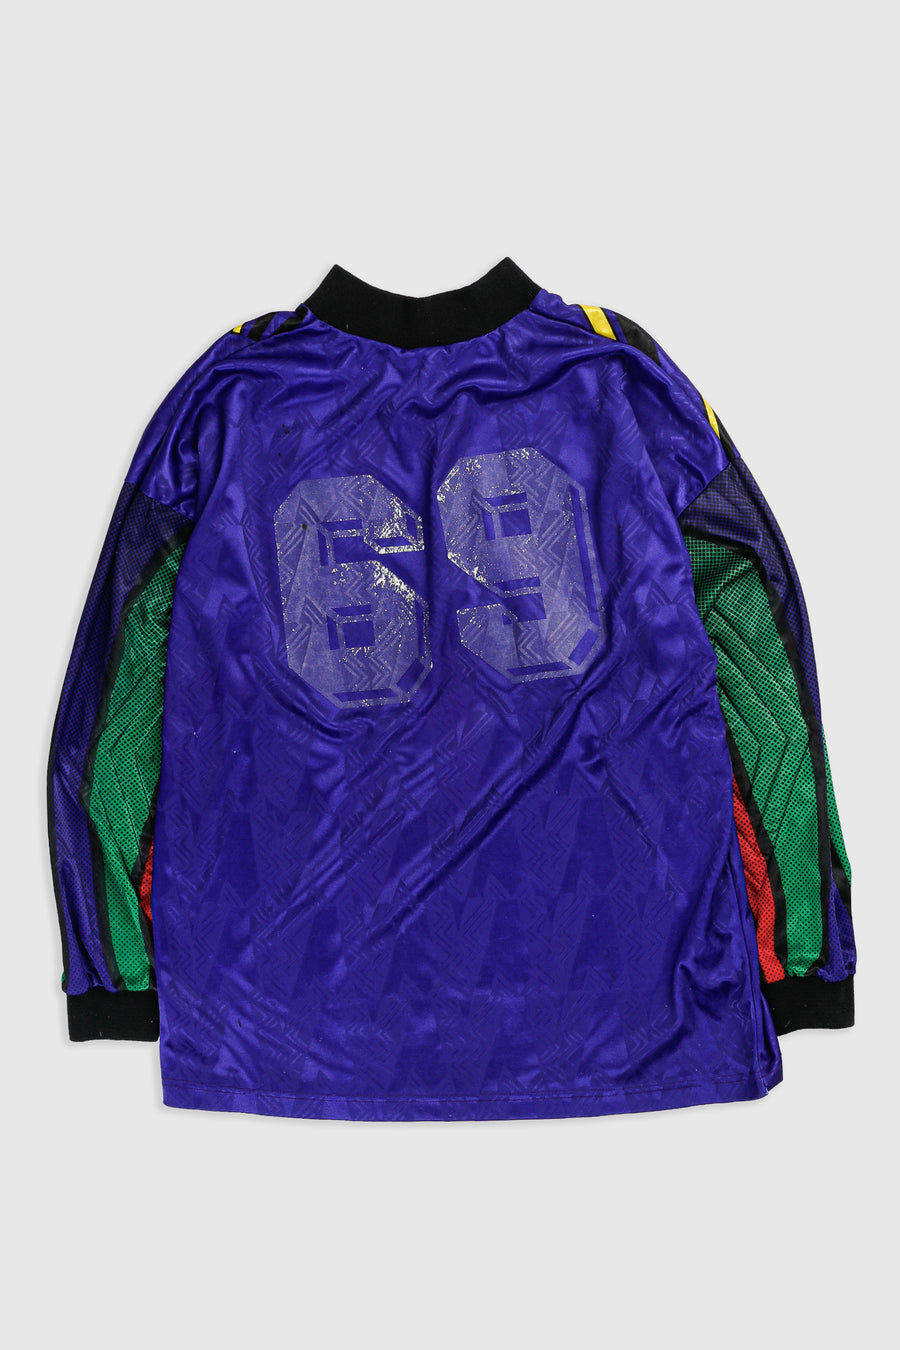 Vintage Umbro Soccer Goalie Jersey - XL